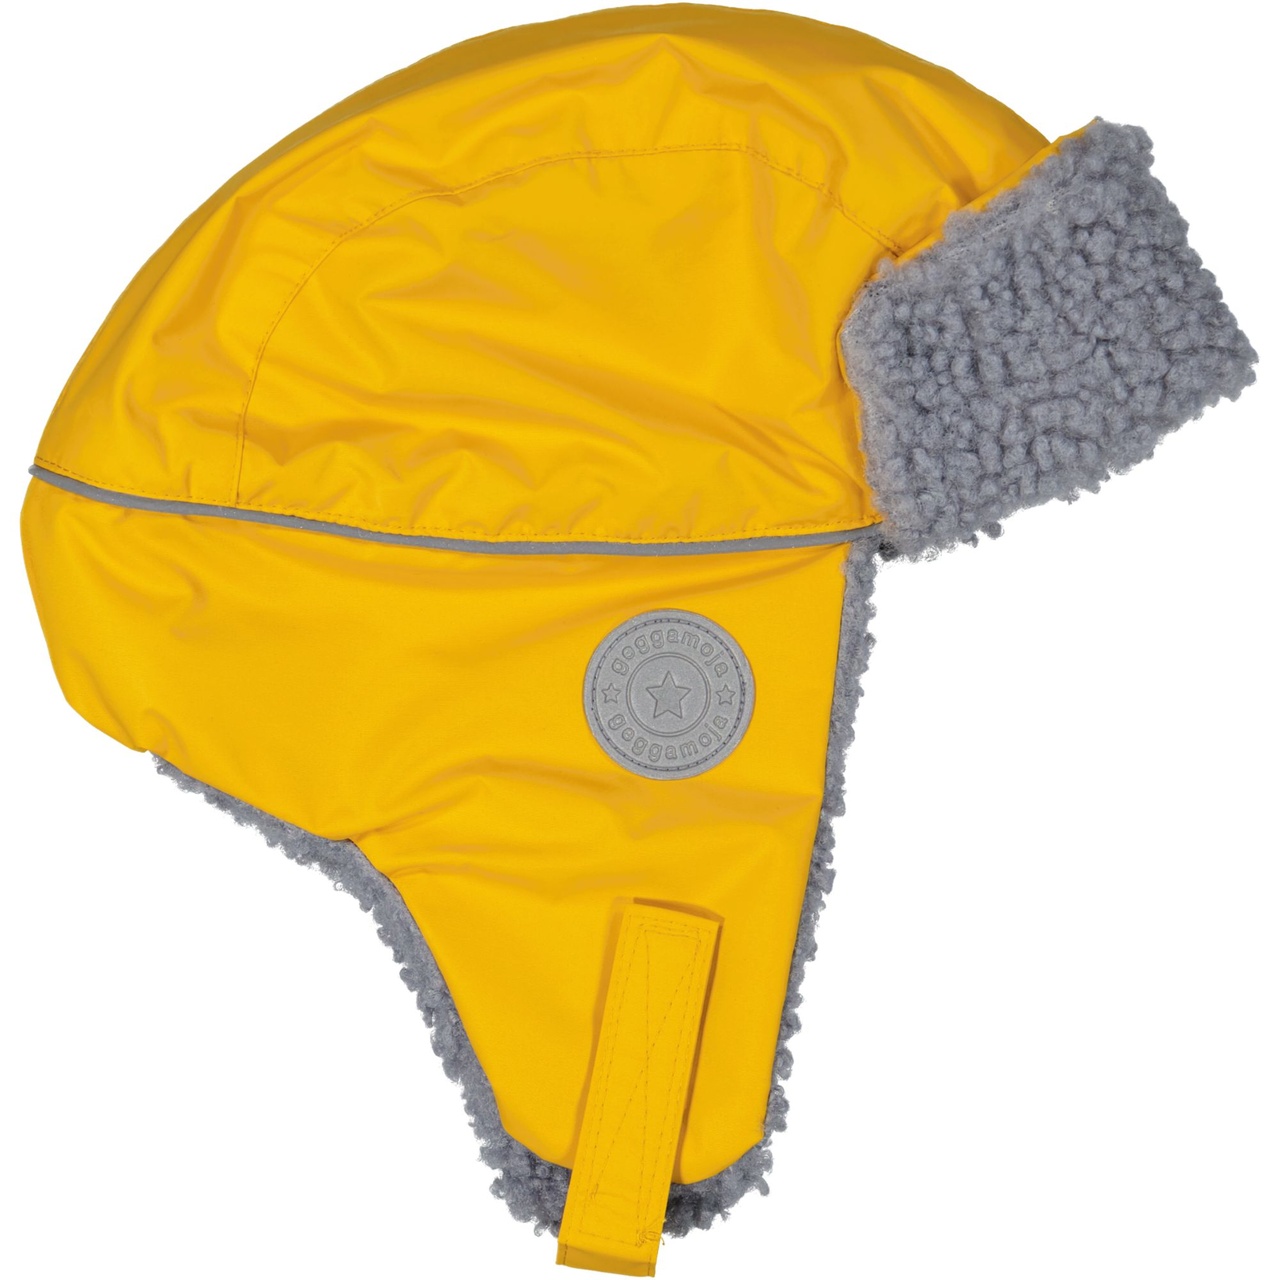 Winter helmet hat Mustard  4-10M